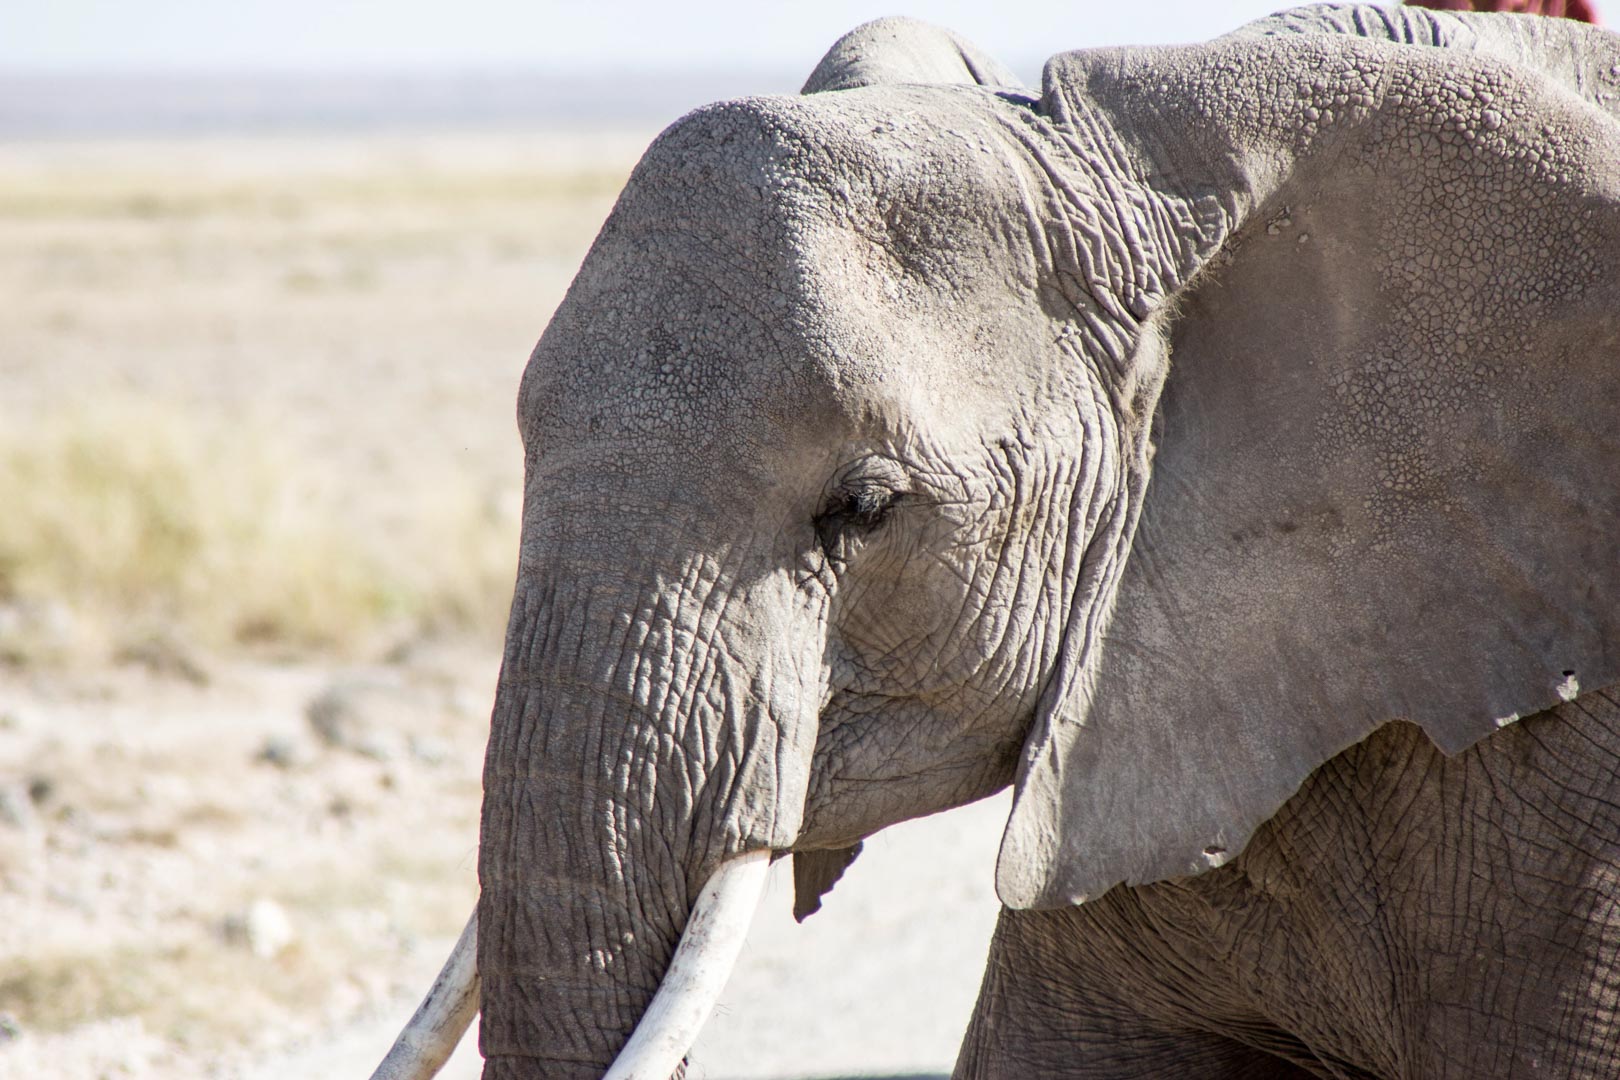 De safari por Amboseli. El paraíso de los elefantes